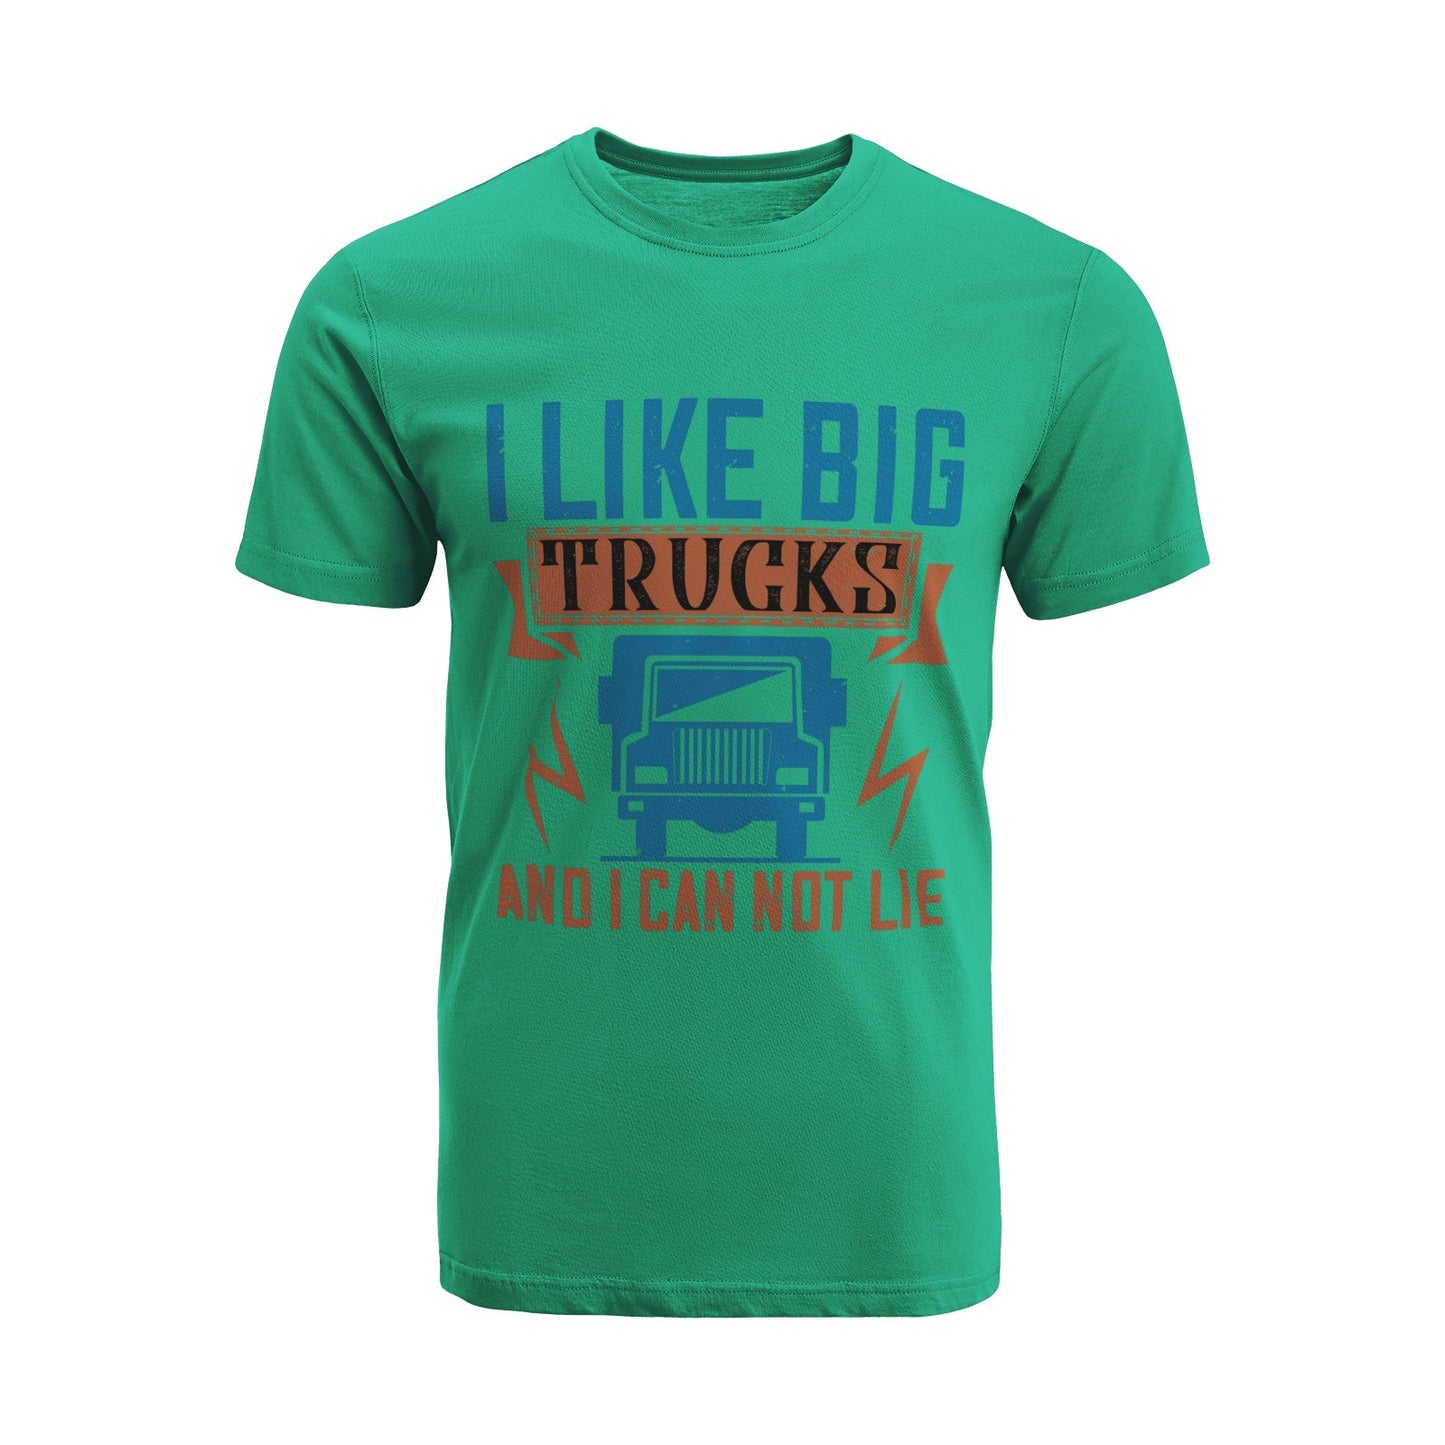 Unisex Short Sleeve Crew Neck Cotton Jersey T-Shirt TRUCK 14